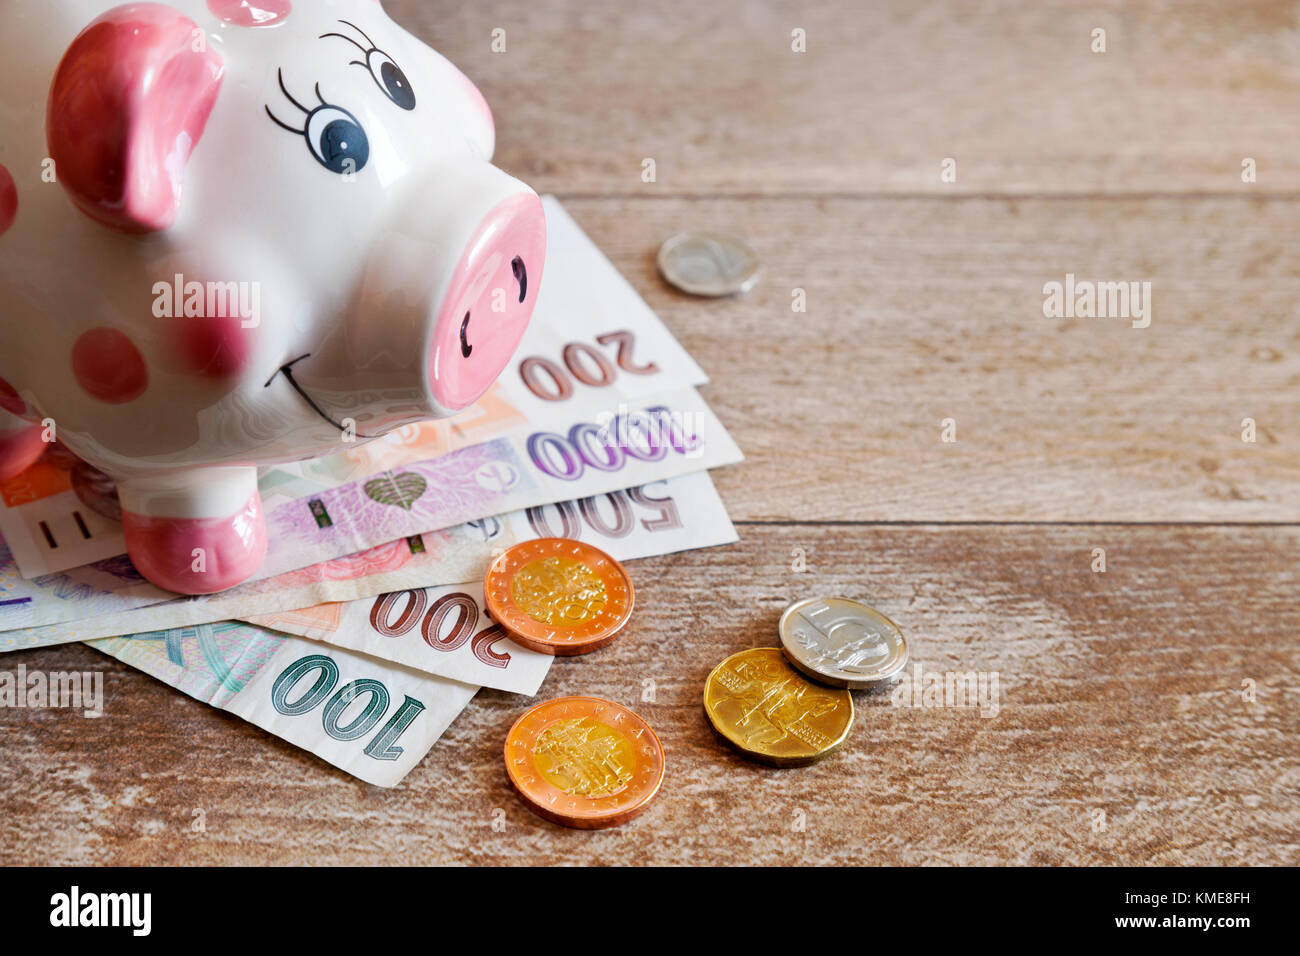 Czech finance and economy - Piggy bank and money / česká ekonomika - prasátko a české peníze Stock Photo